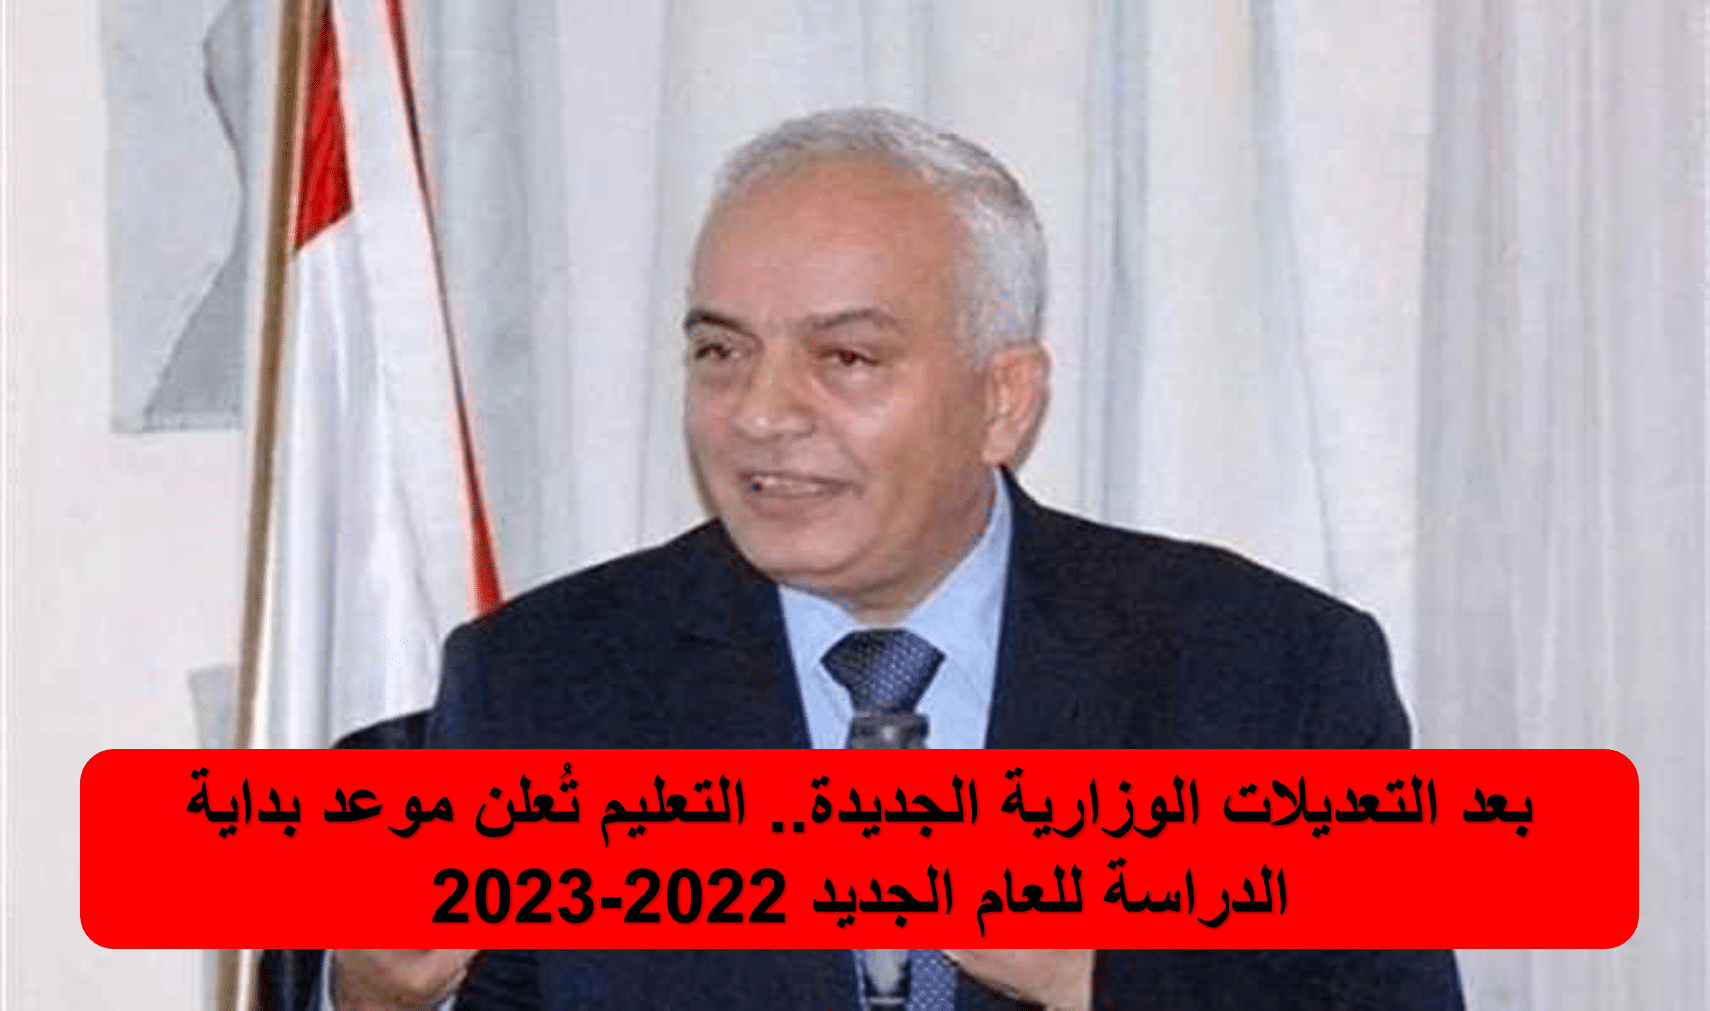 موعد بداية الدراسة للعام الجديد 2022-2023